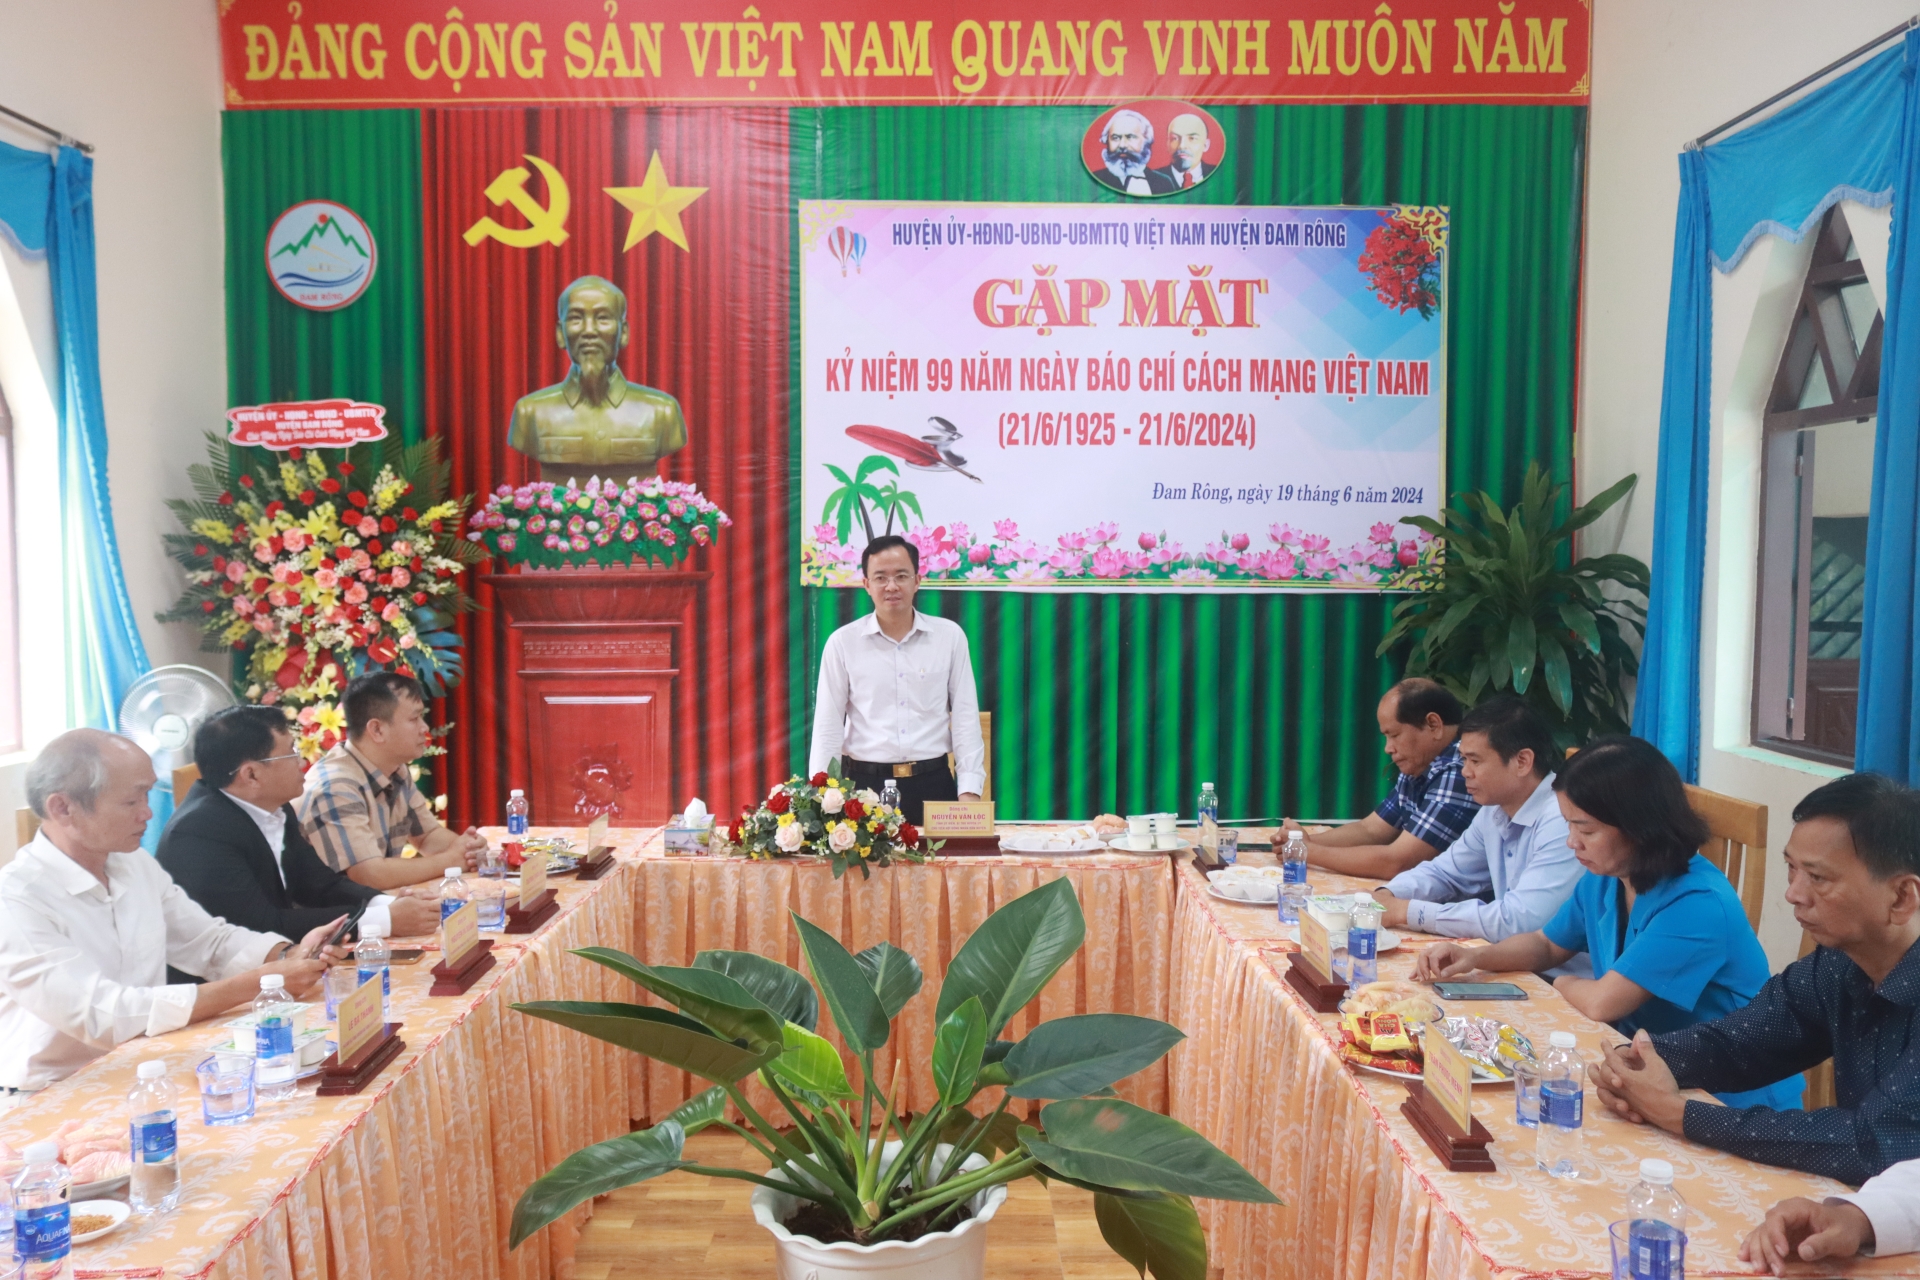 Đồng chí Nguyễn Văn Lộc – Bí thư Huyện ủy, Chủ tịch HĐND huyện phát biểu chúc mừng tại buổi gặp mặt